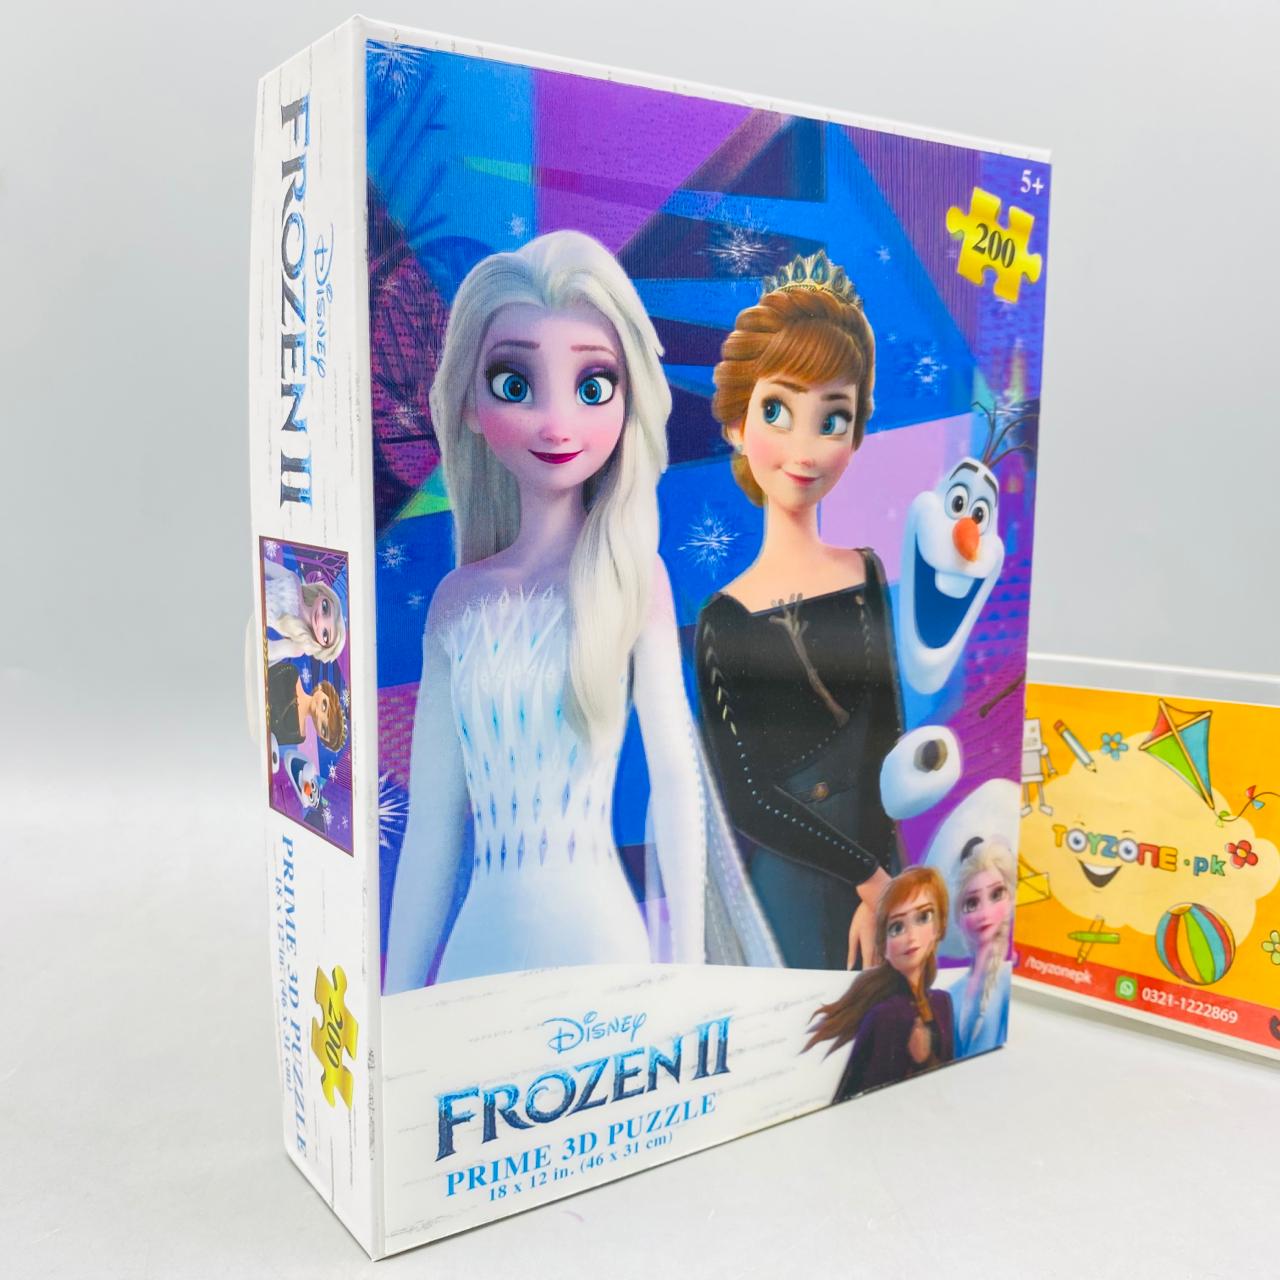 Frozen Prime 3D Puzzle Game